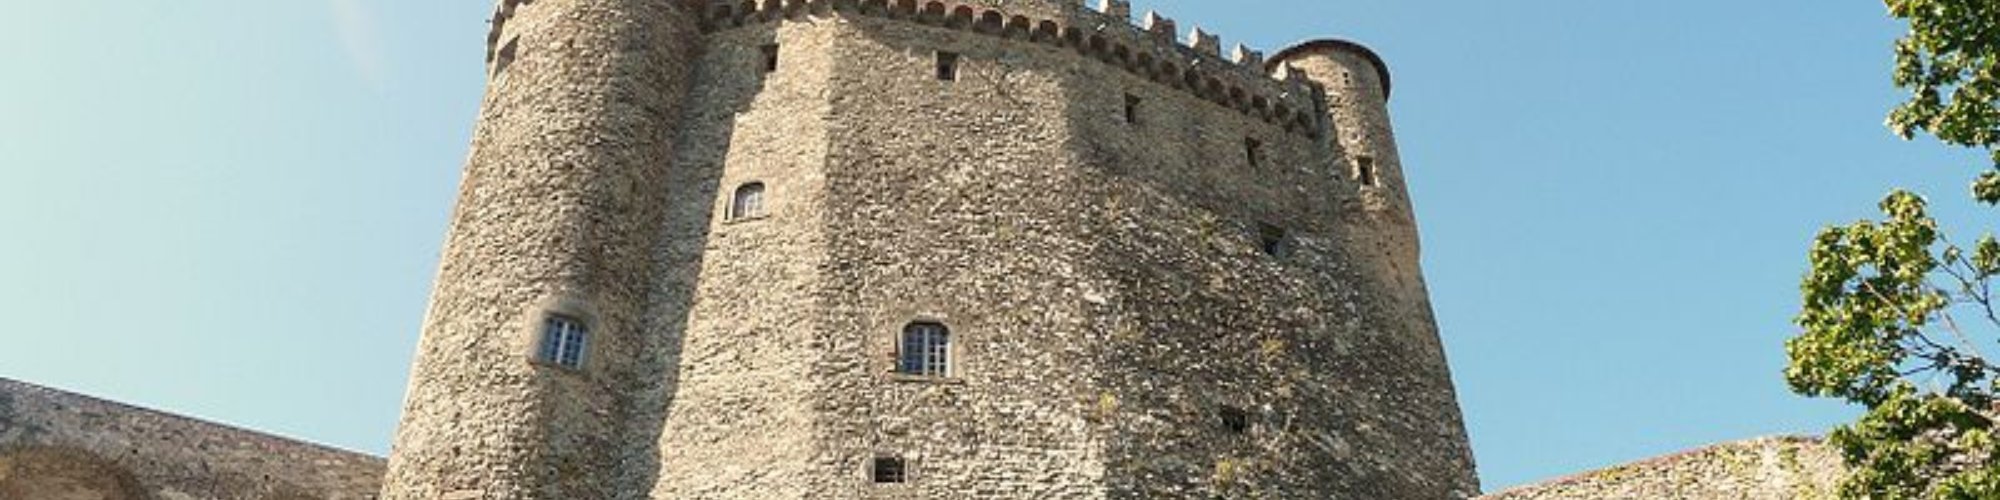 Fosdinovo Castle